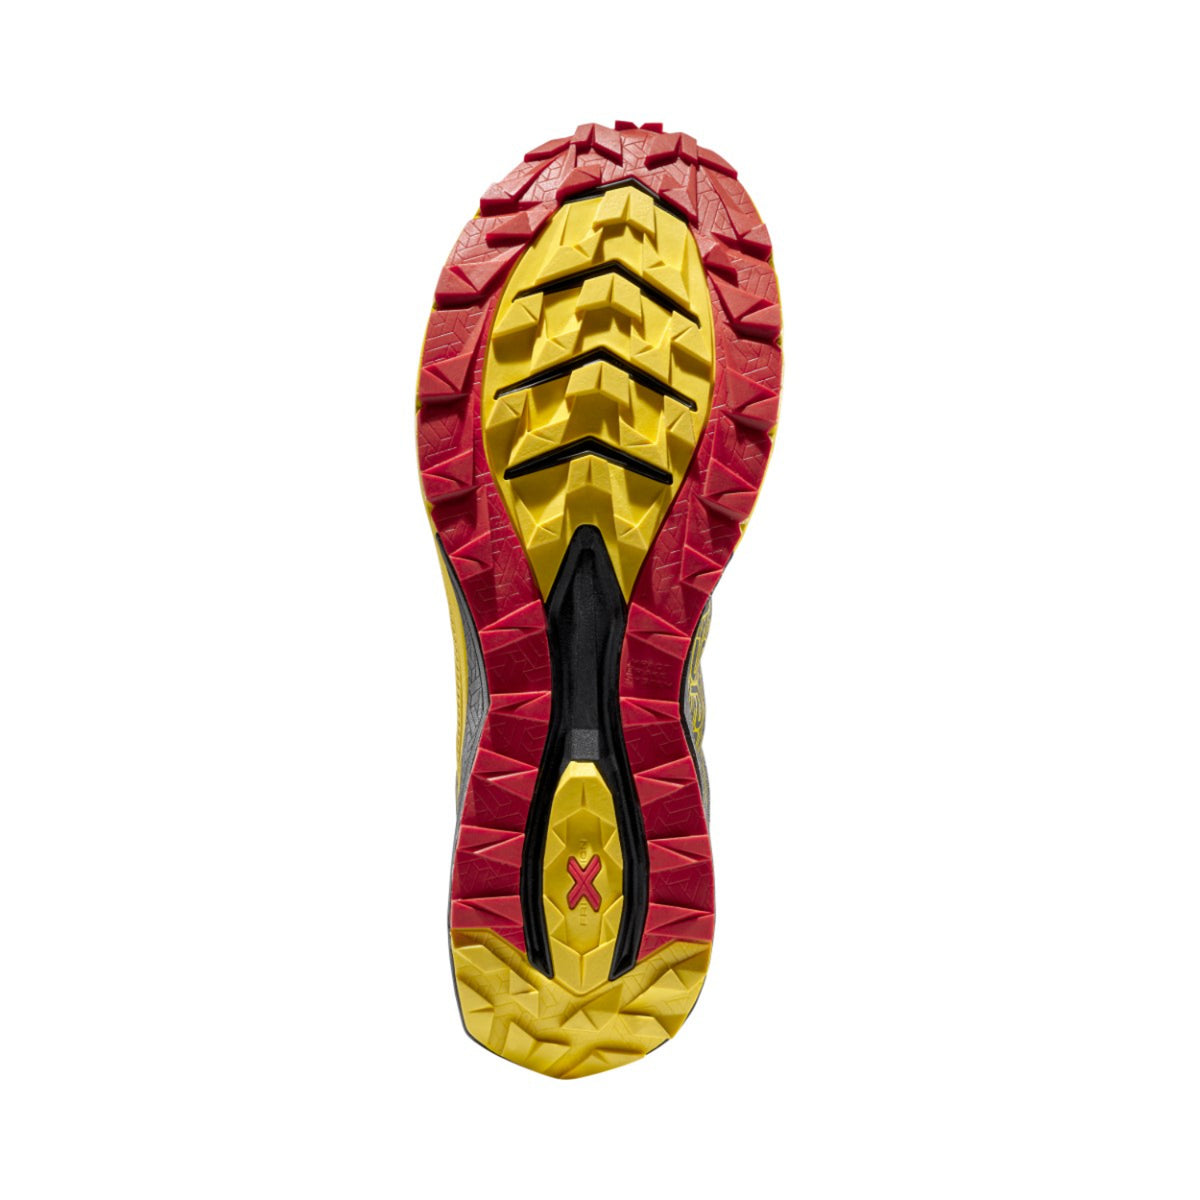 La Sportiva Jackal II black yellow running shoes showing sole unit